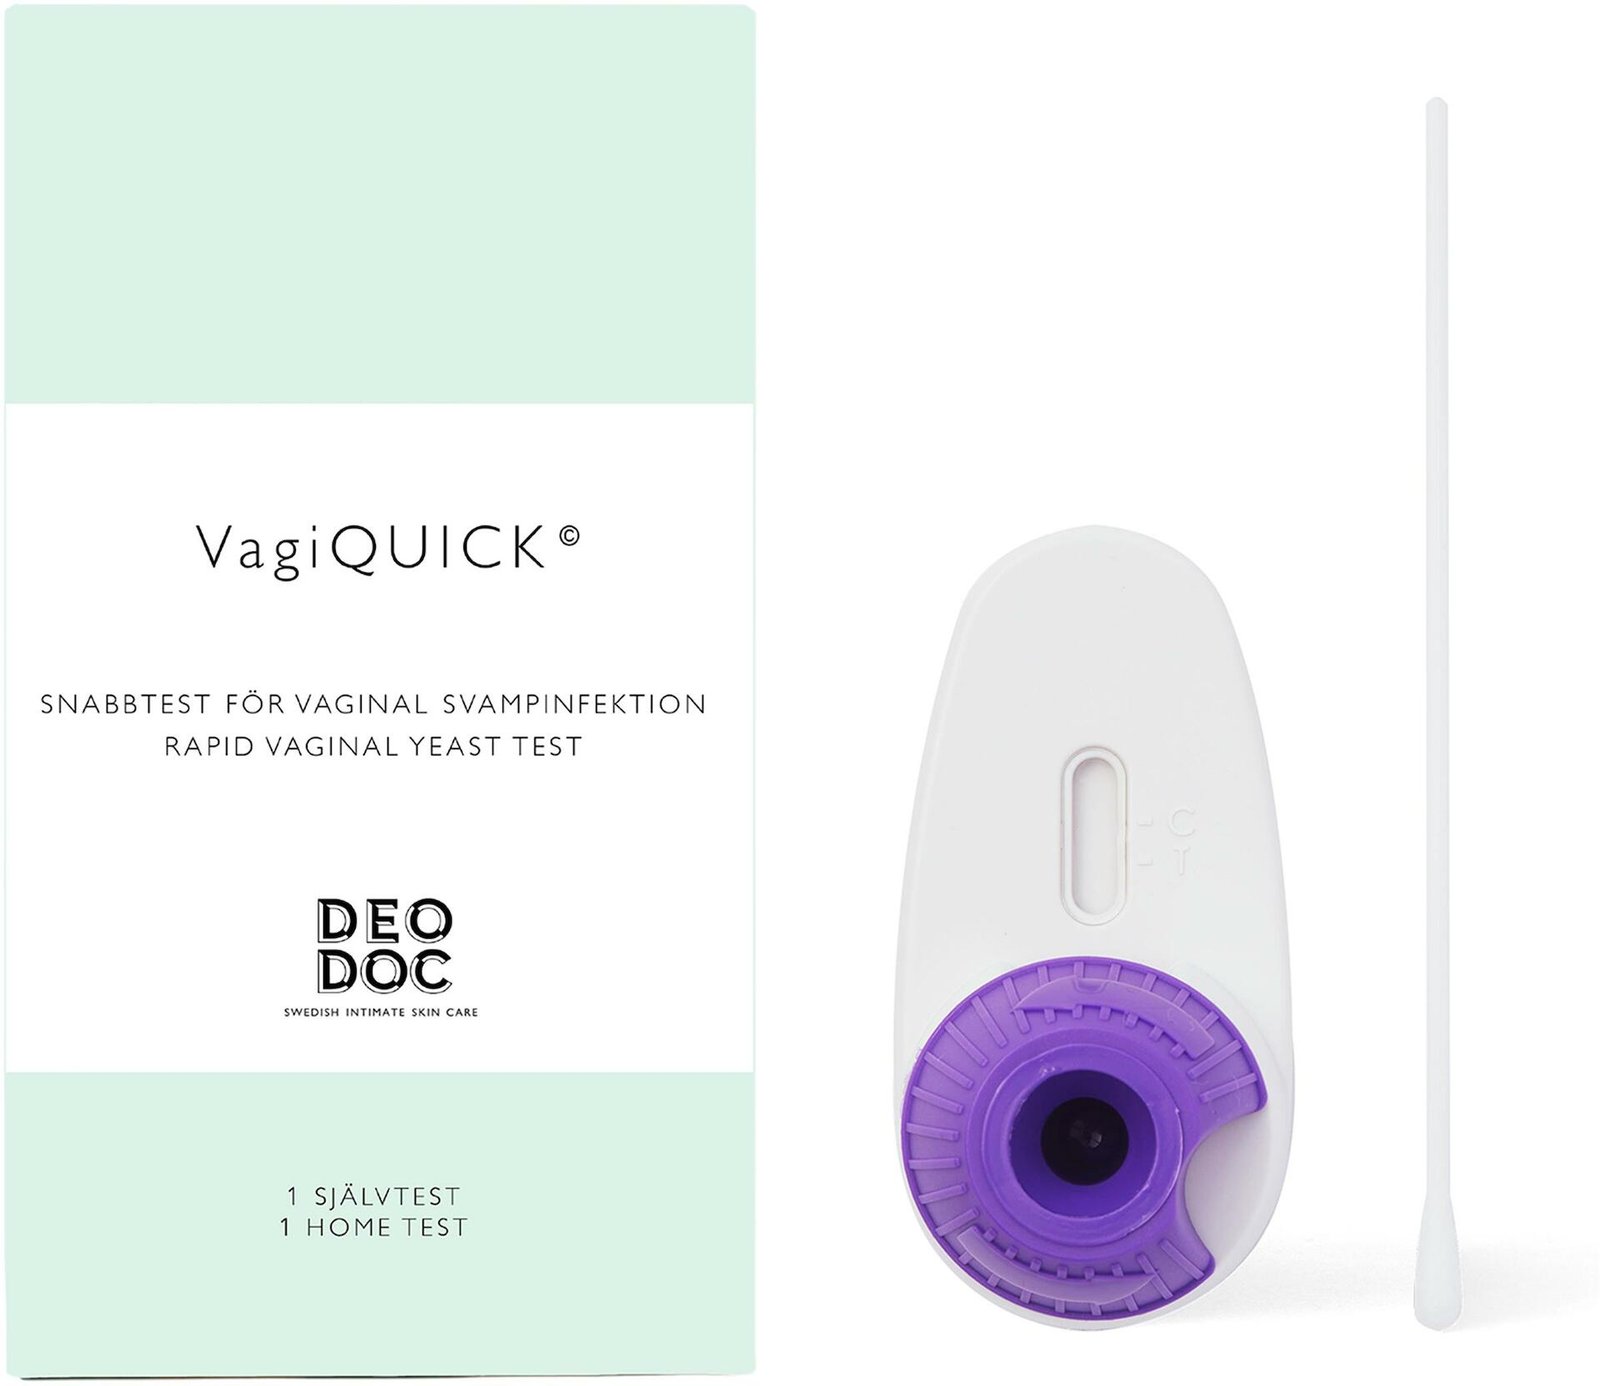 DeoDoc VagiQuick Test Vaginal Scampinfektion 1 st